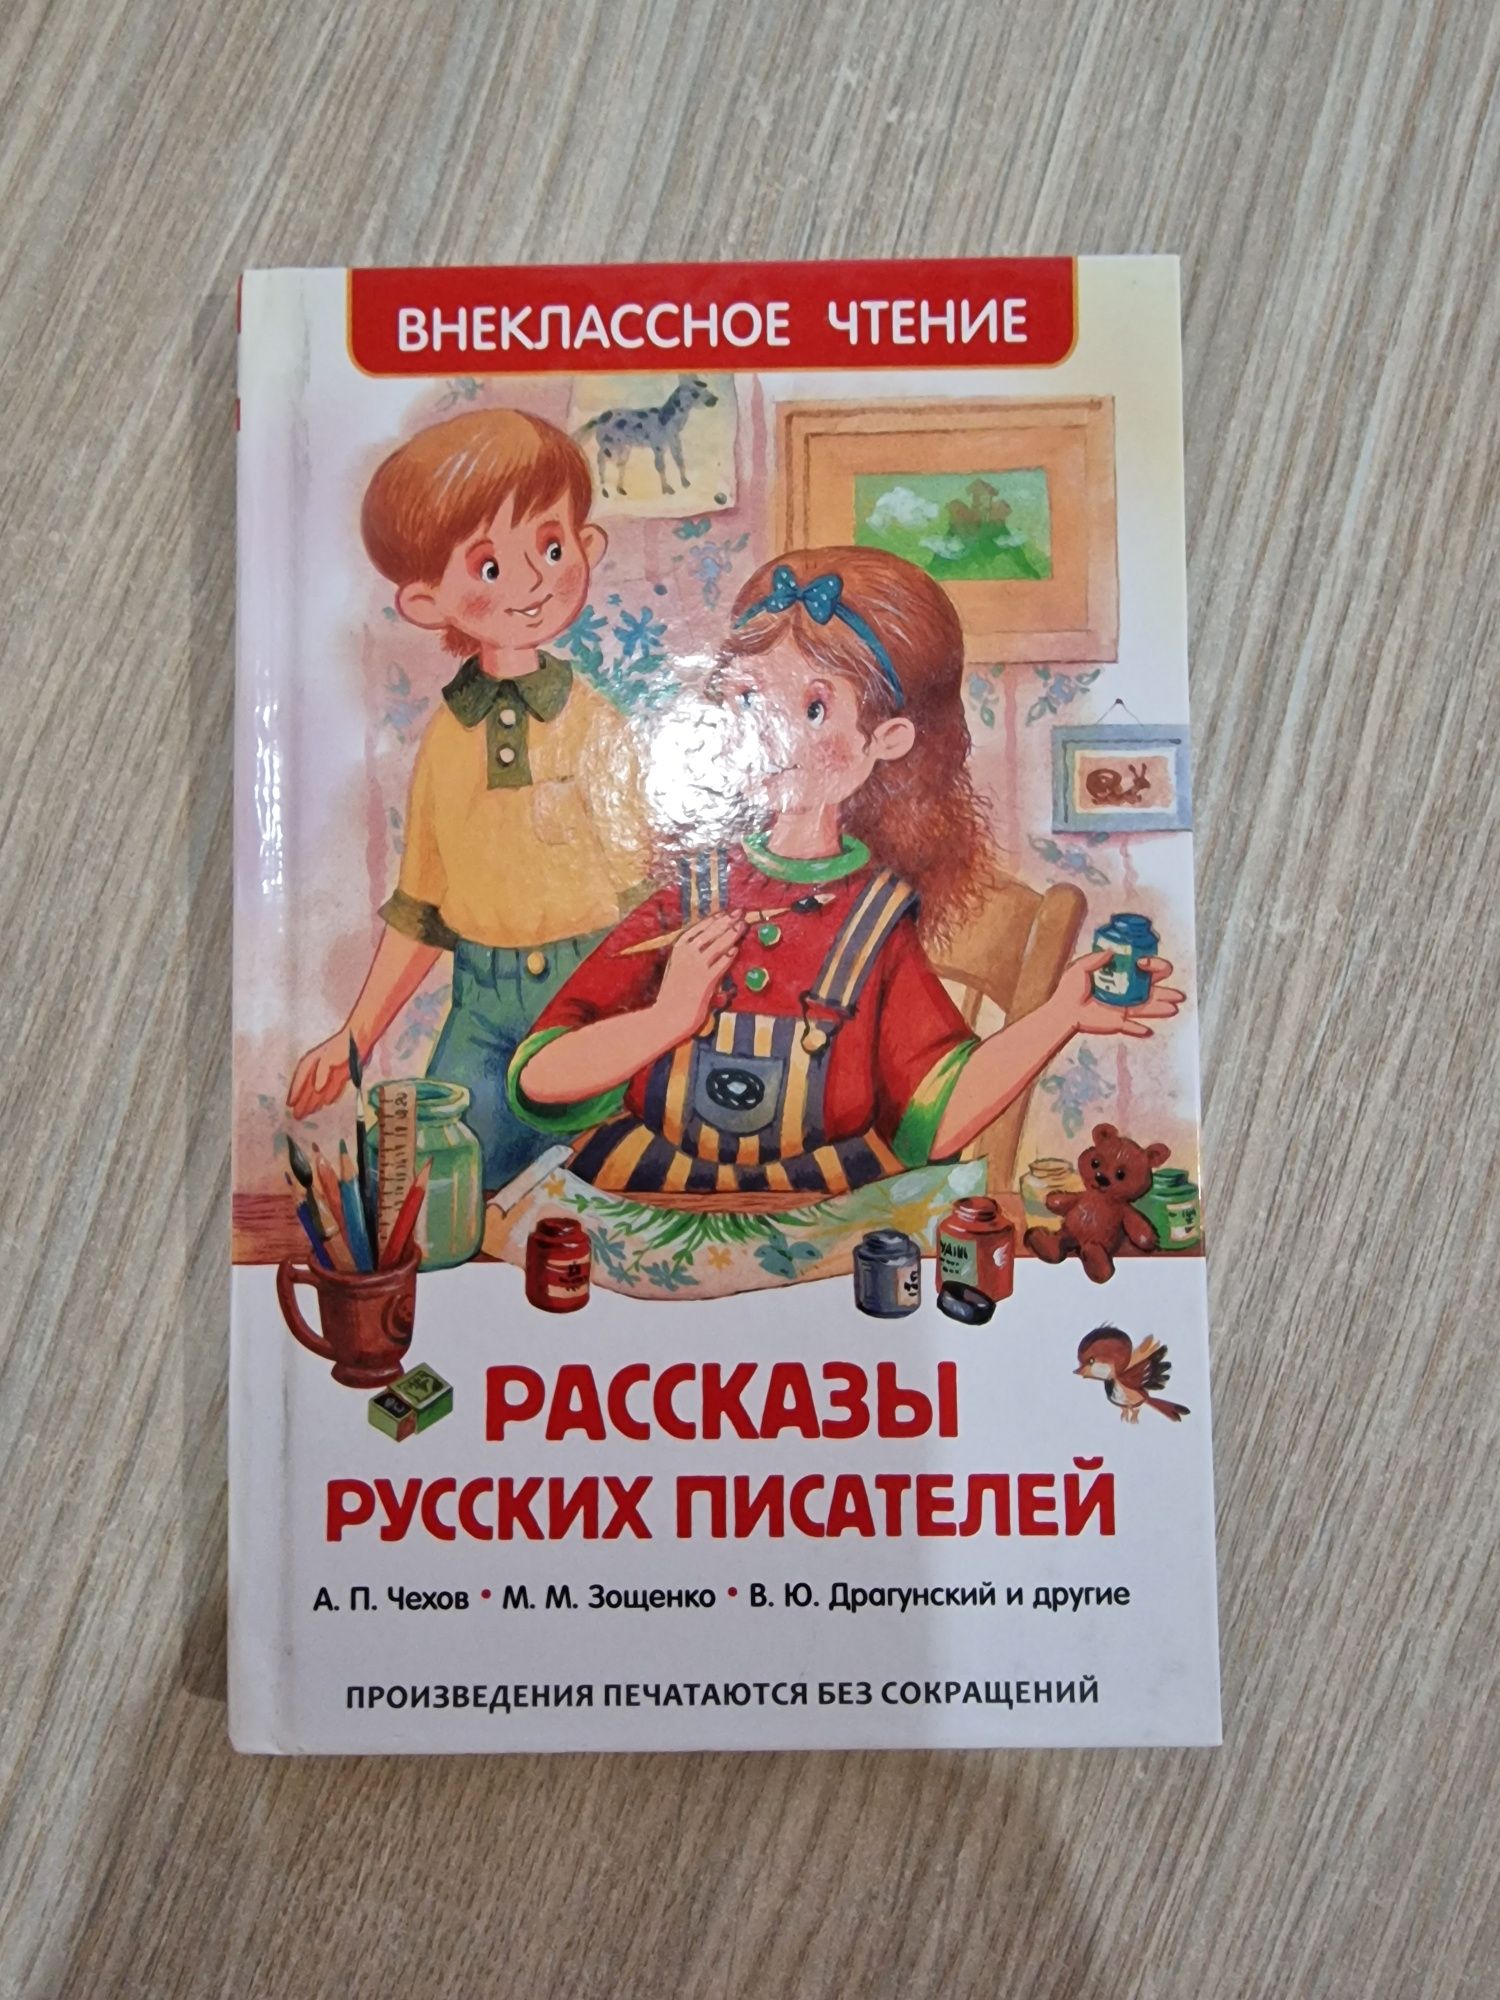 Детские книги, современное издание